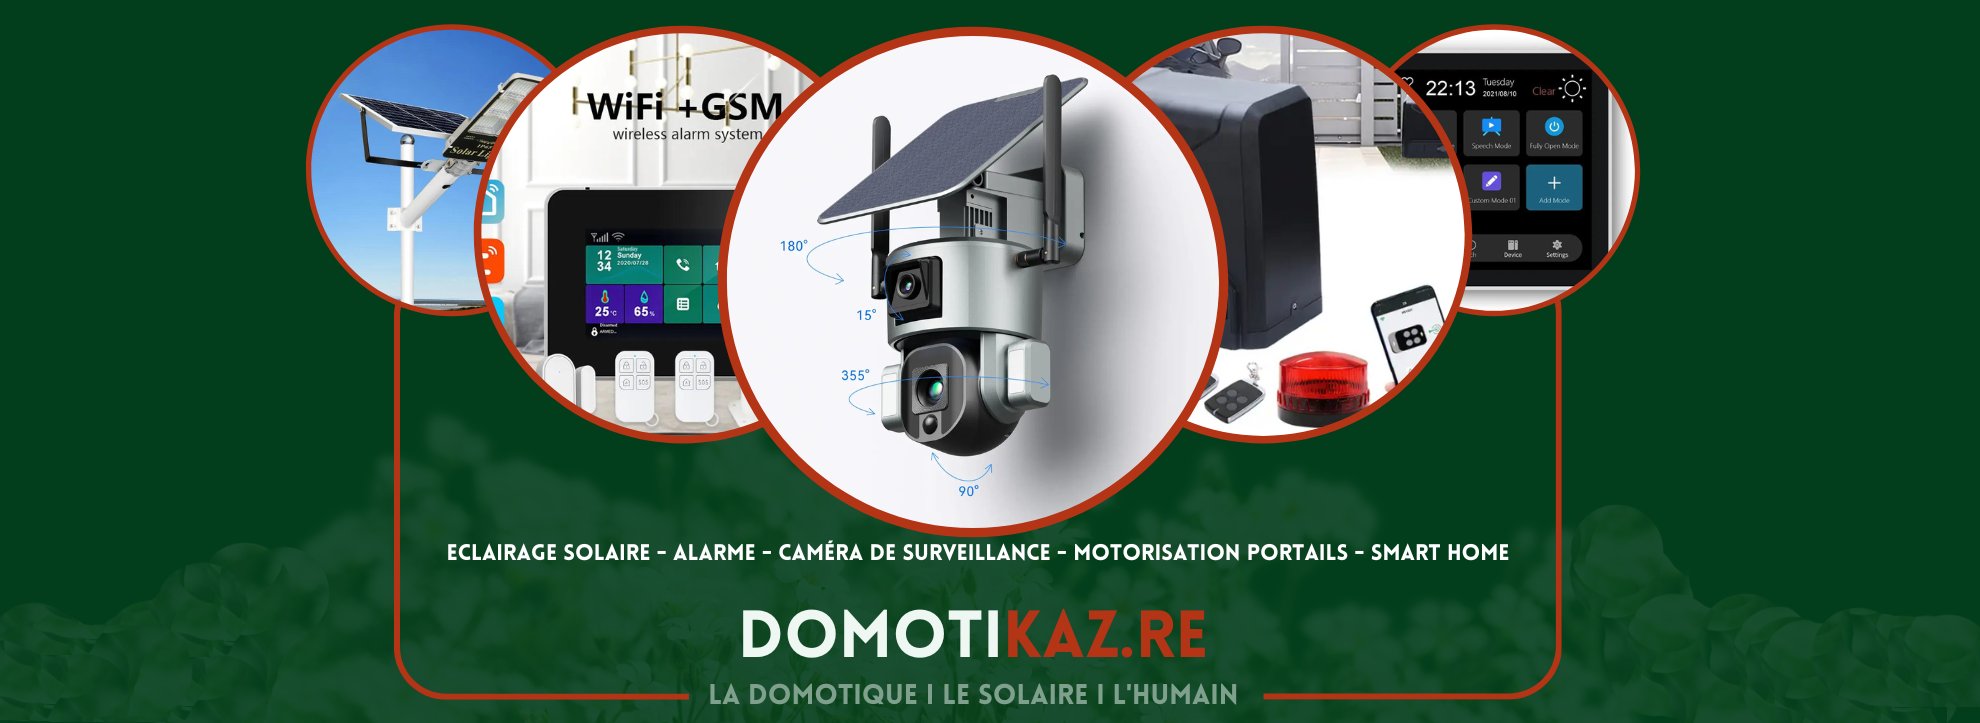 Domotikaz : Domotique solaire à la Réunion, cameras de surveillance, alarmes, motorisation de portail, eclairage solaire, smart home